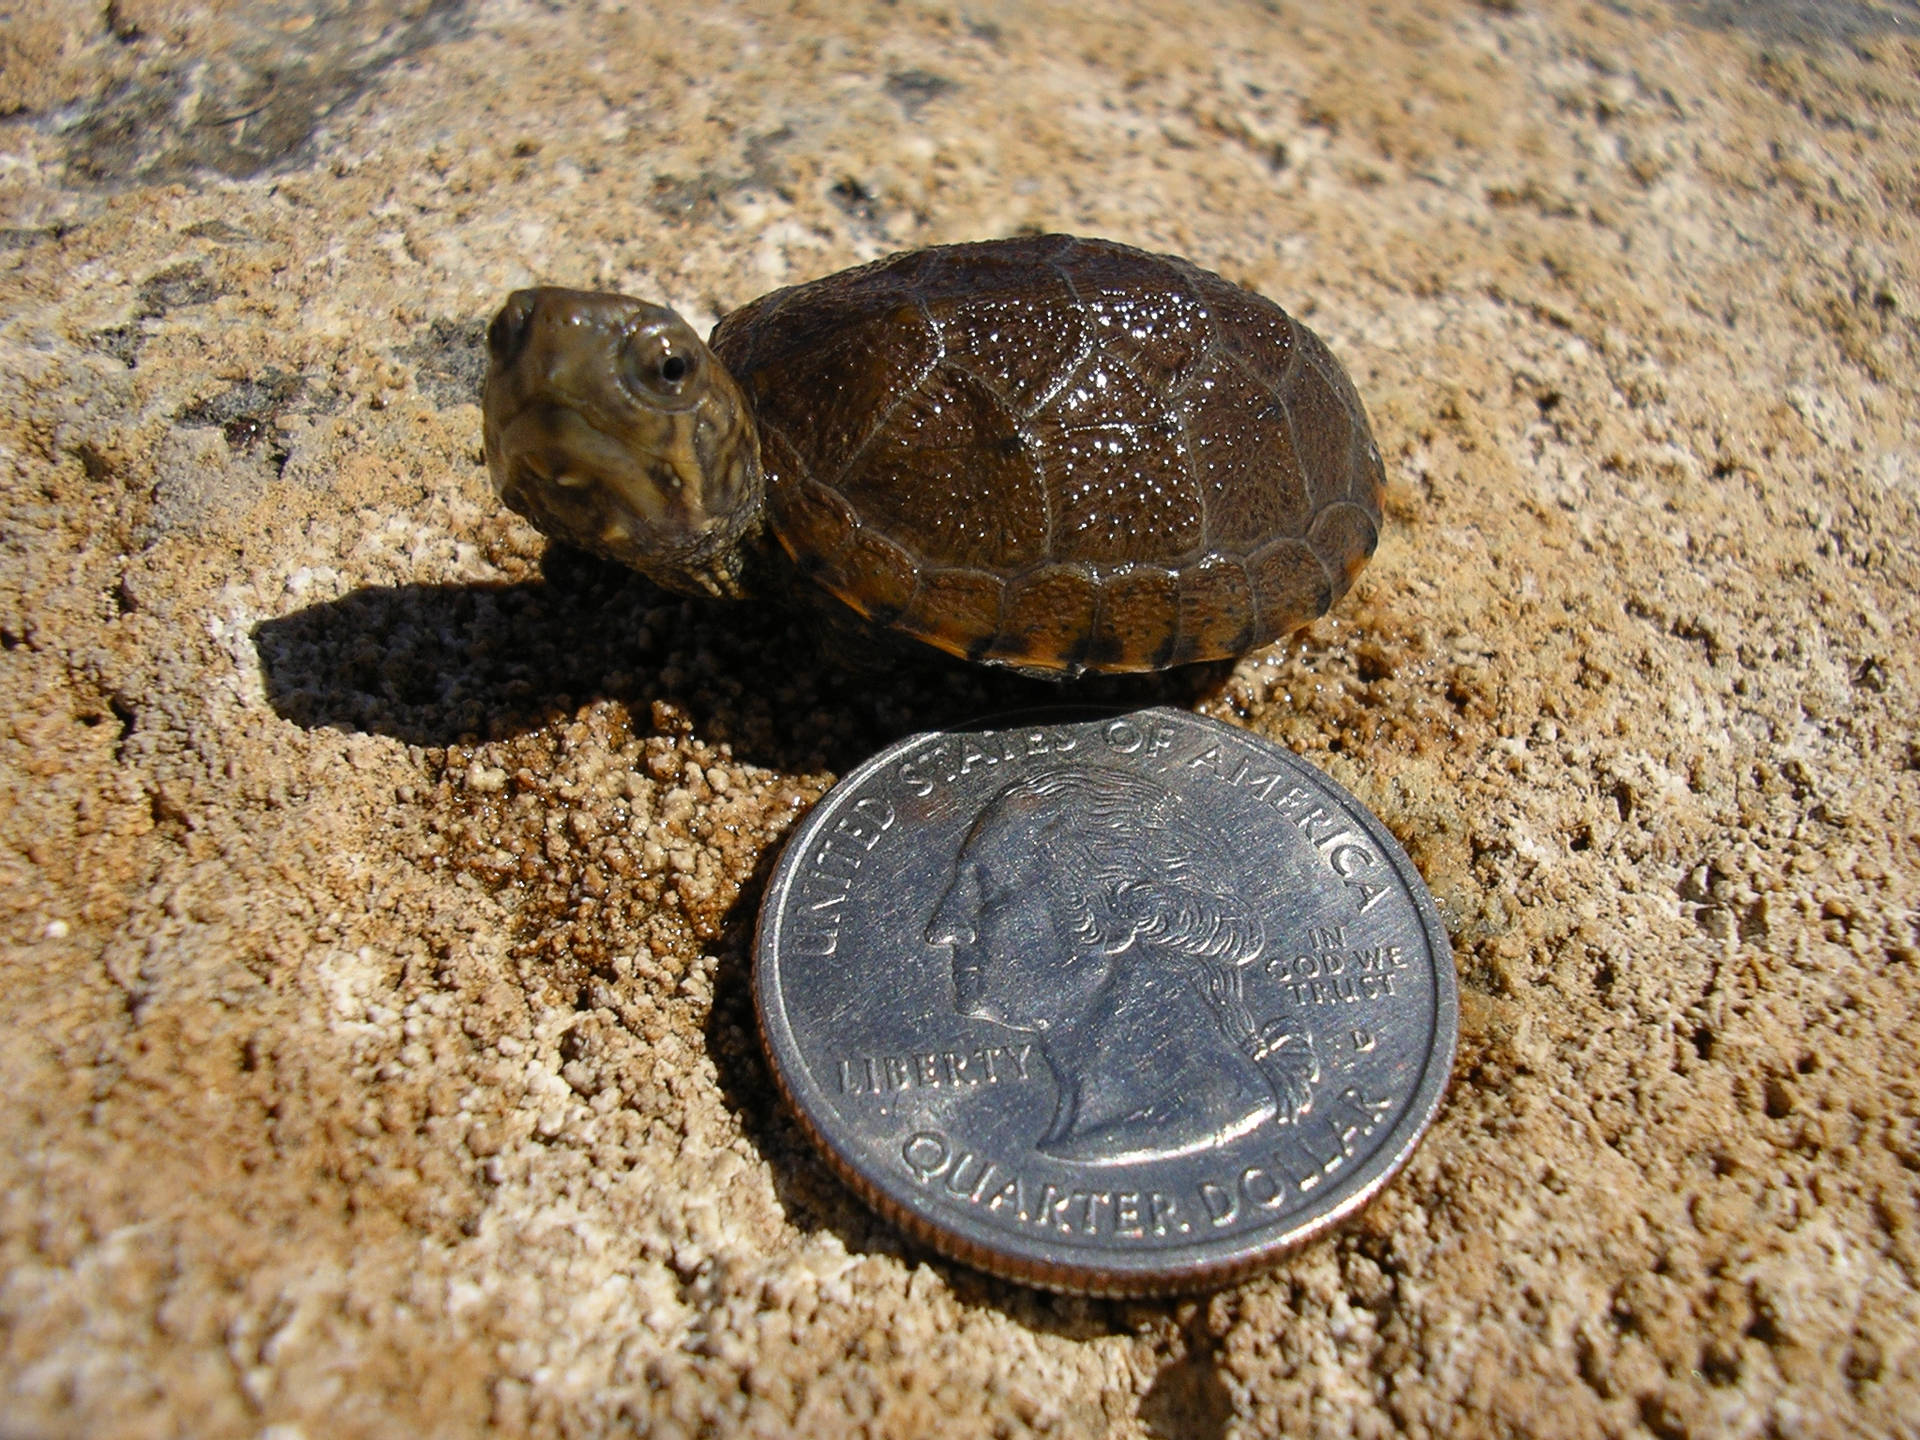 Schlammschildkröte Im Vergleich Zu Einer Münze Wallpaper